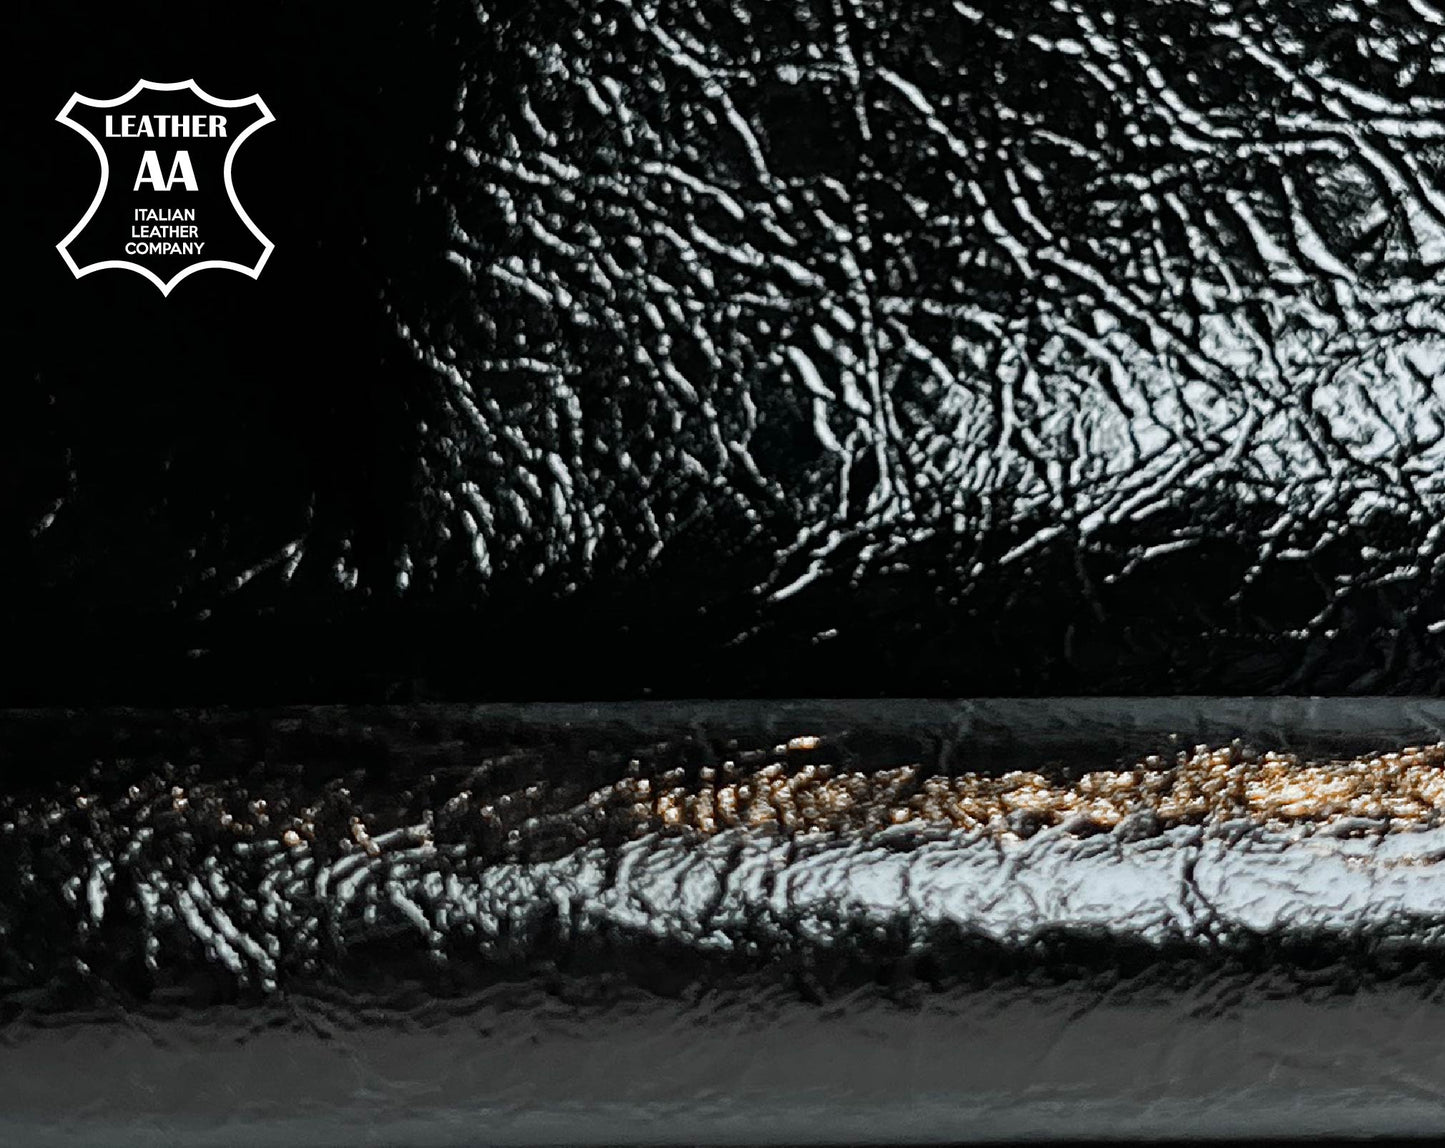 Black Vintage Lambskin - Bonded Leather 0.8mm/2oz / BLACK VINTAGE 1439